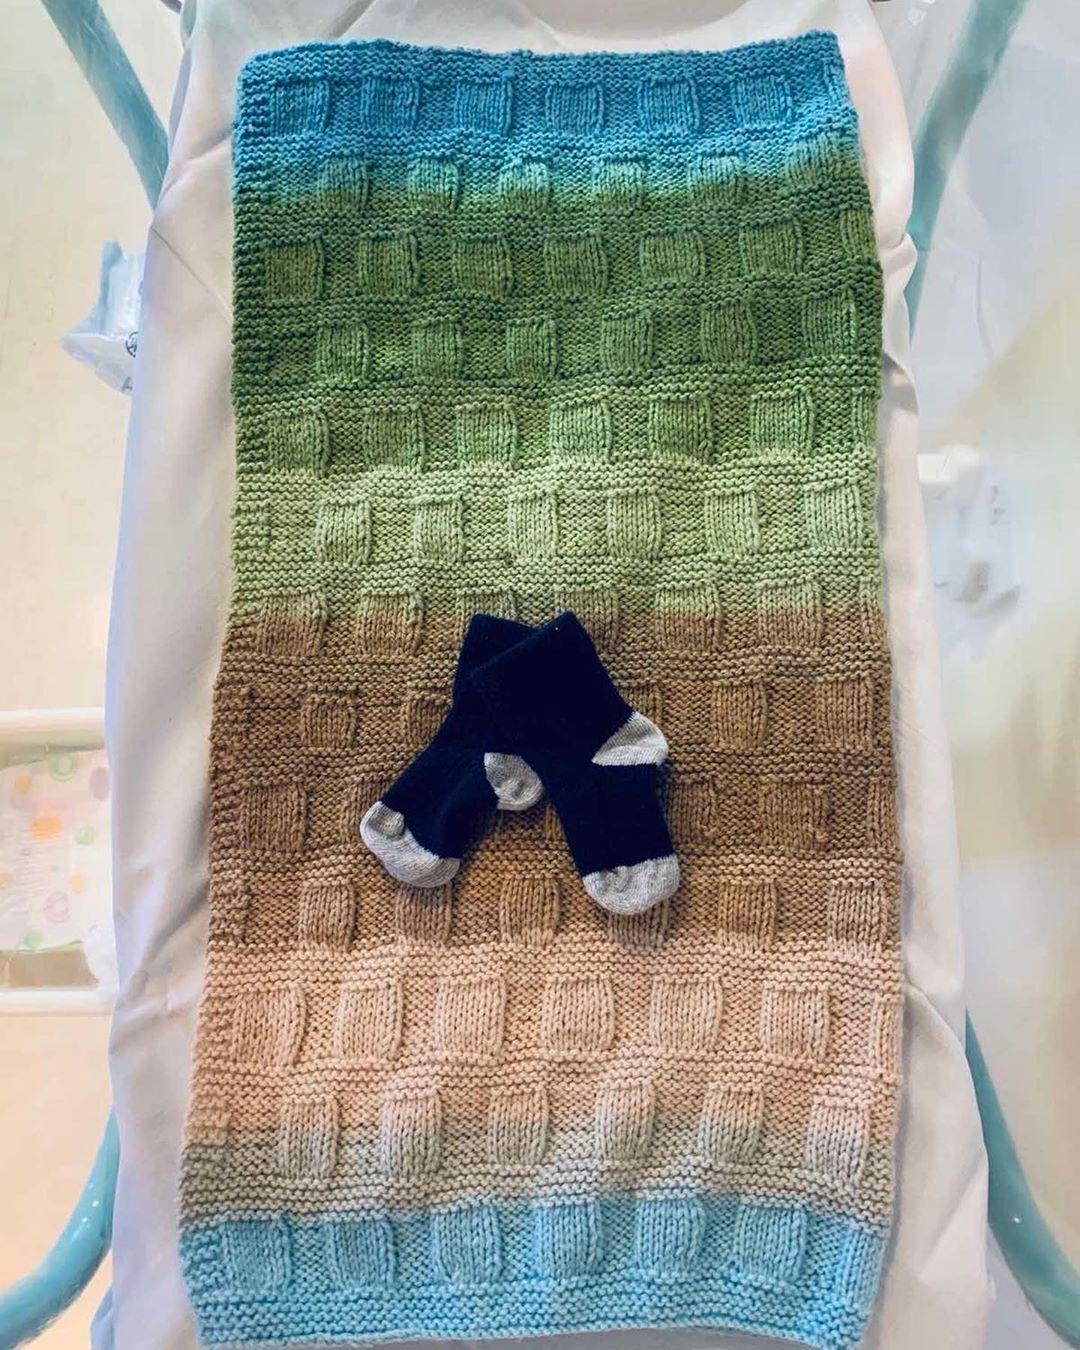 Эд Ширан впервые стал отцом (Instagram Эда Ширана)